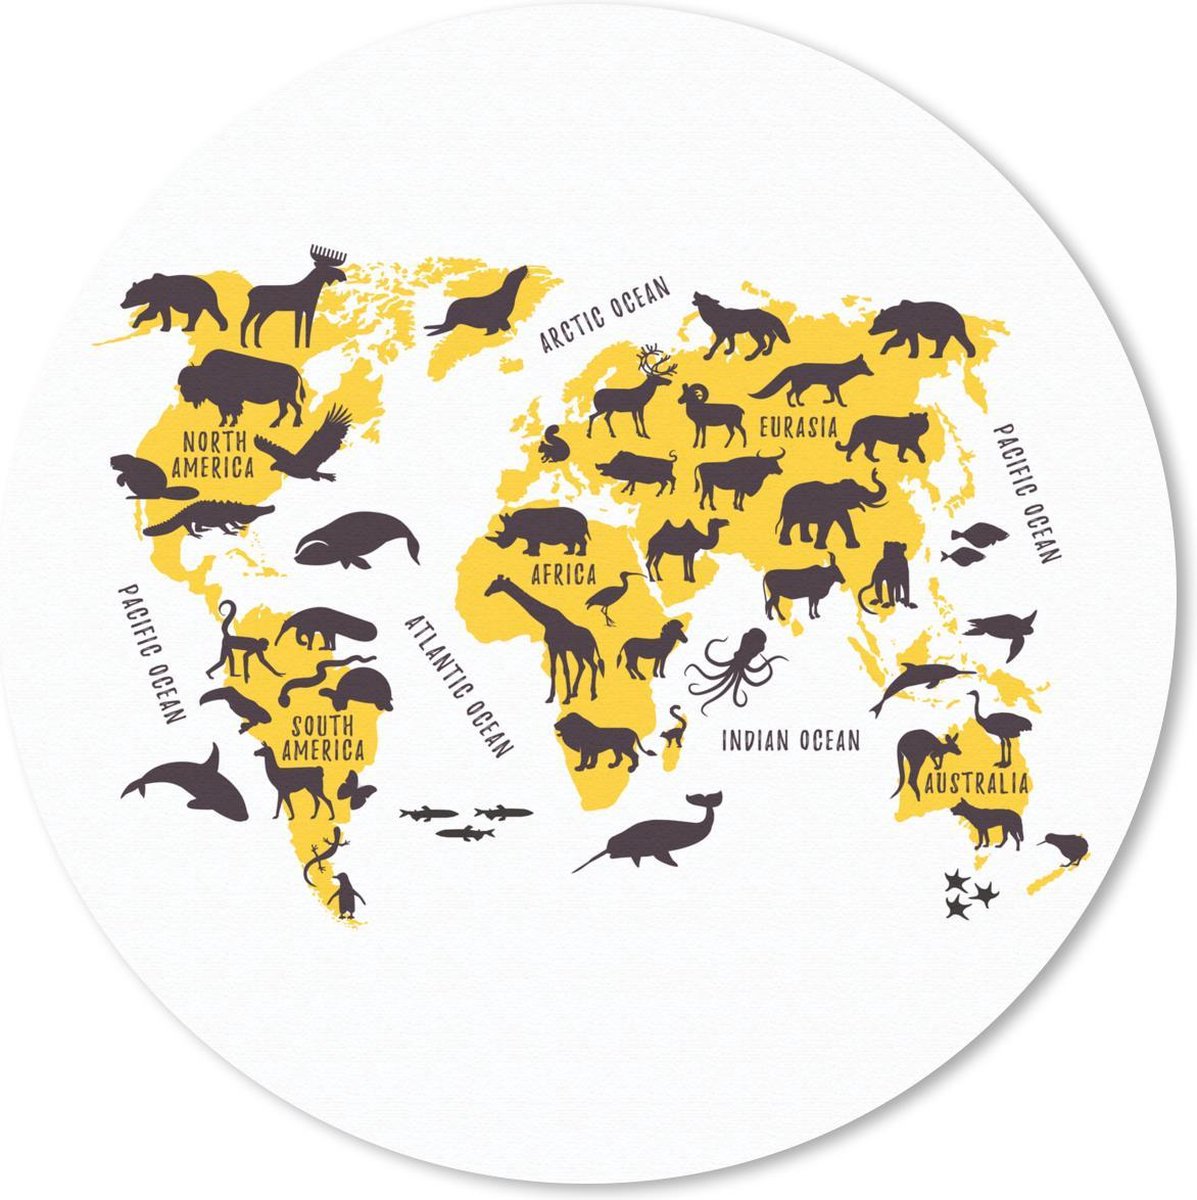 Muismat - Mousepad - Rond - Wereldkaart - Dieren - Geel - 50x50 cm - Ronde muismat